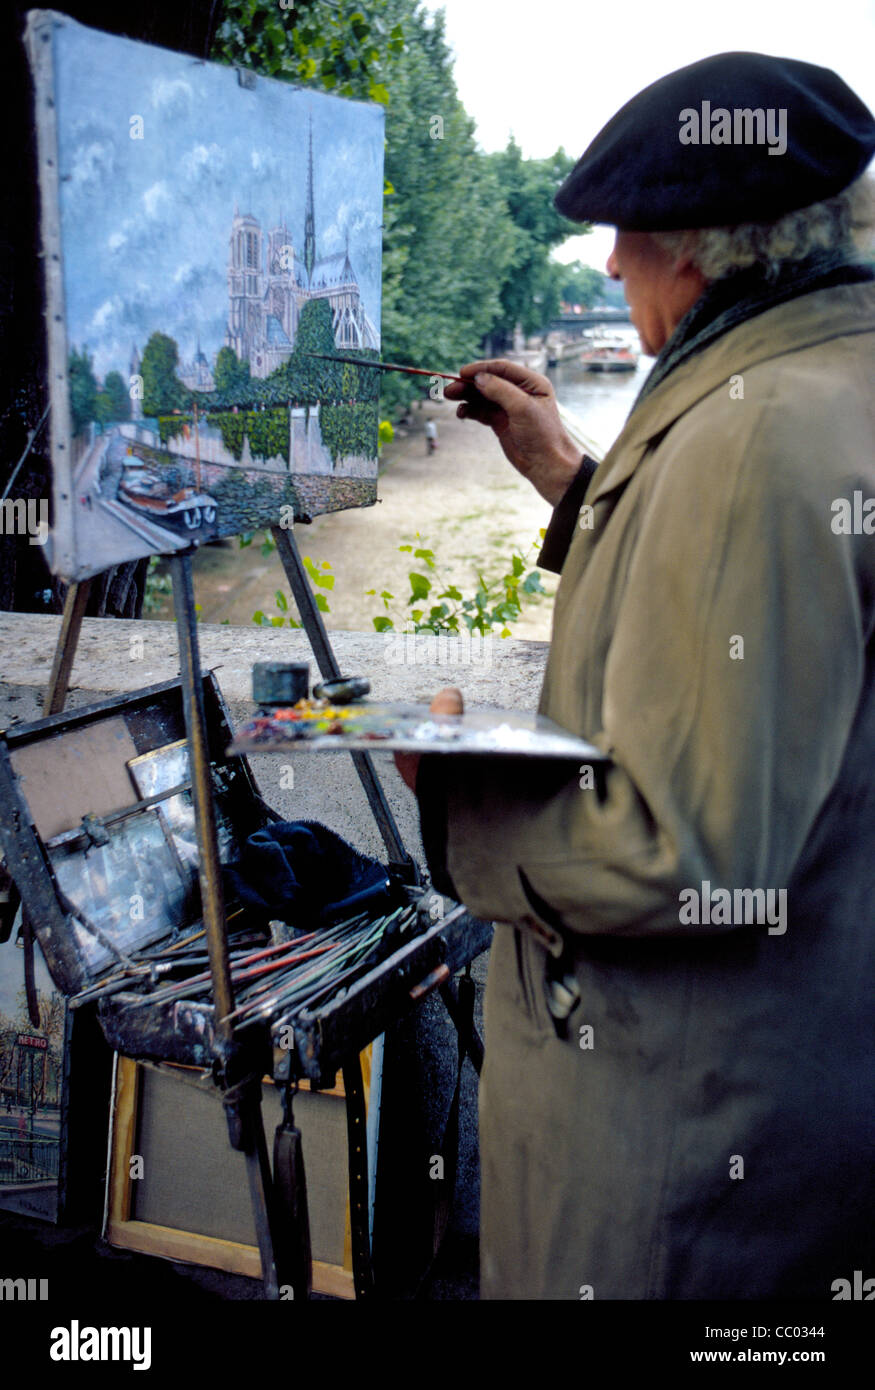 Un vieux peintre parisien travaille à l'extérieur sur son oeuvre dans le secteur de la célèbre cathédrale Notre-Dame et la Seine à Paris, France. Banque D'Images